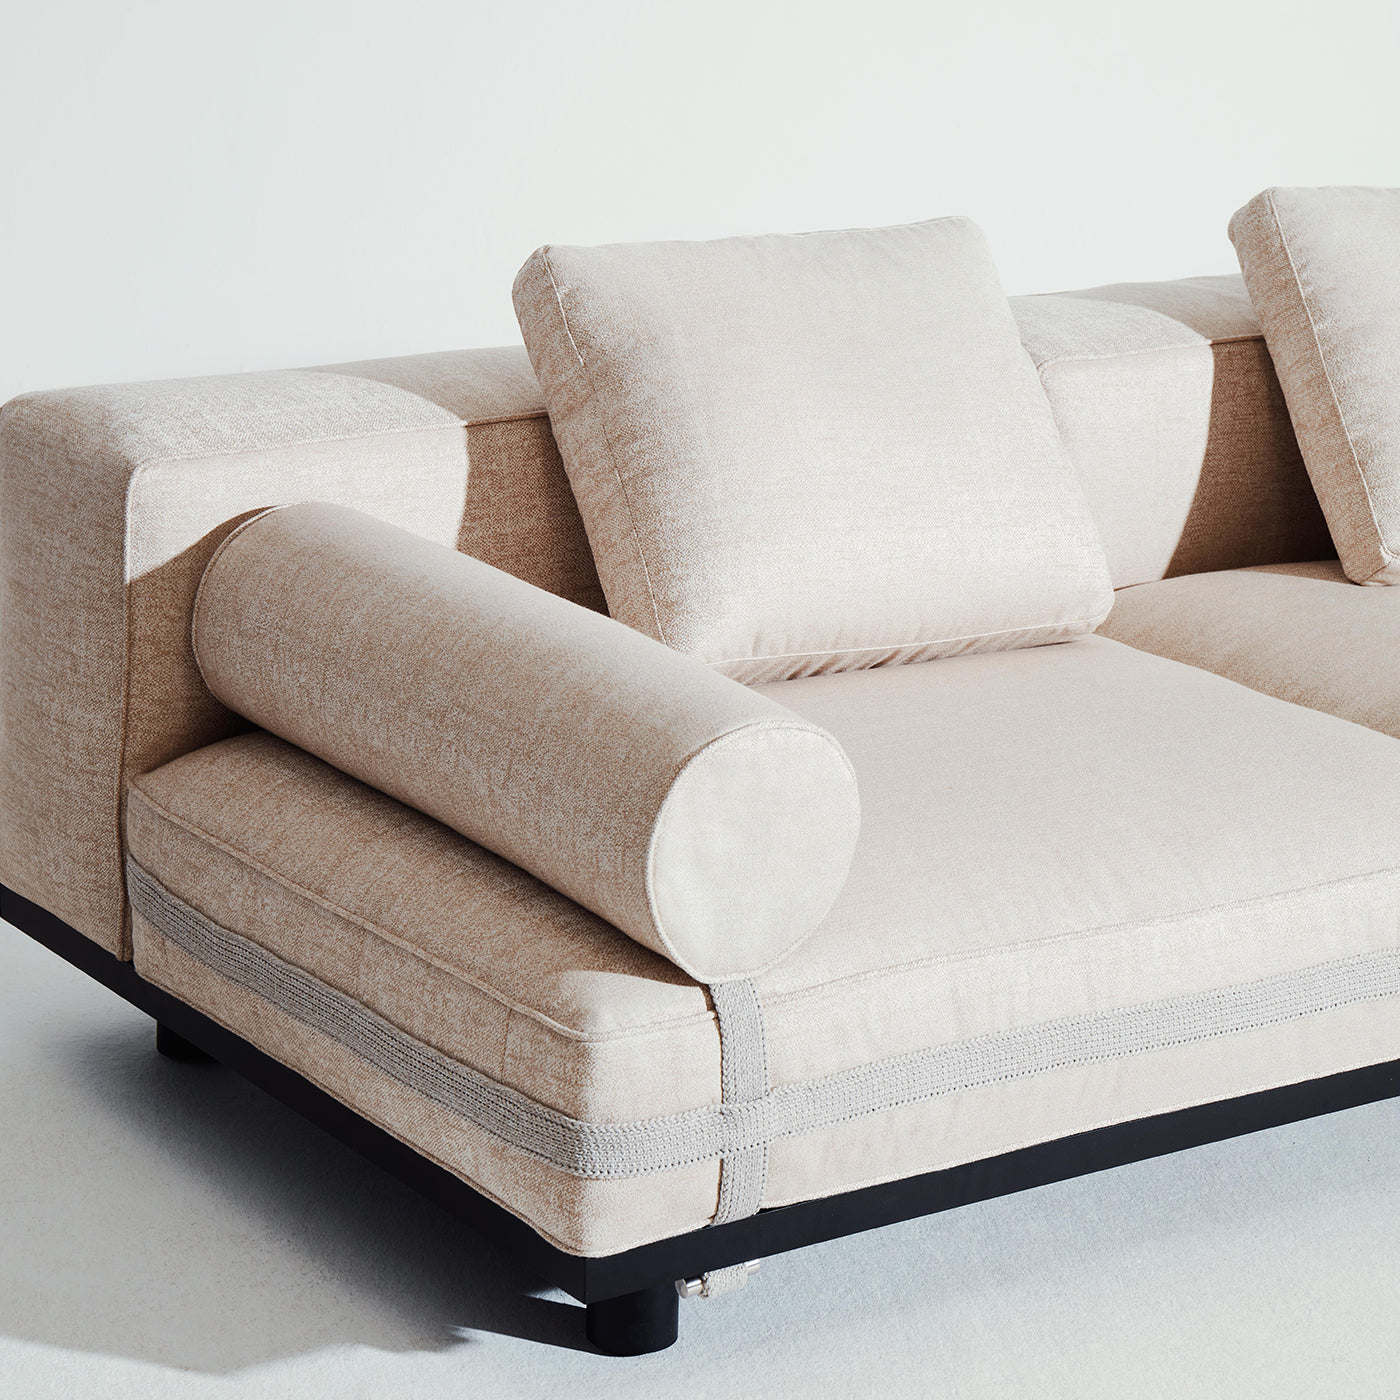 Saint Remy Weißes 2-Sitzer Sofa #2 von Luca Nichetto - Alternative Ansicht 1